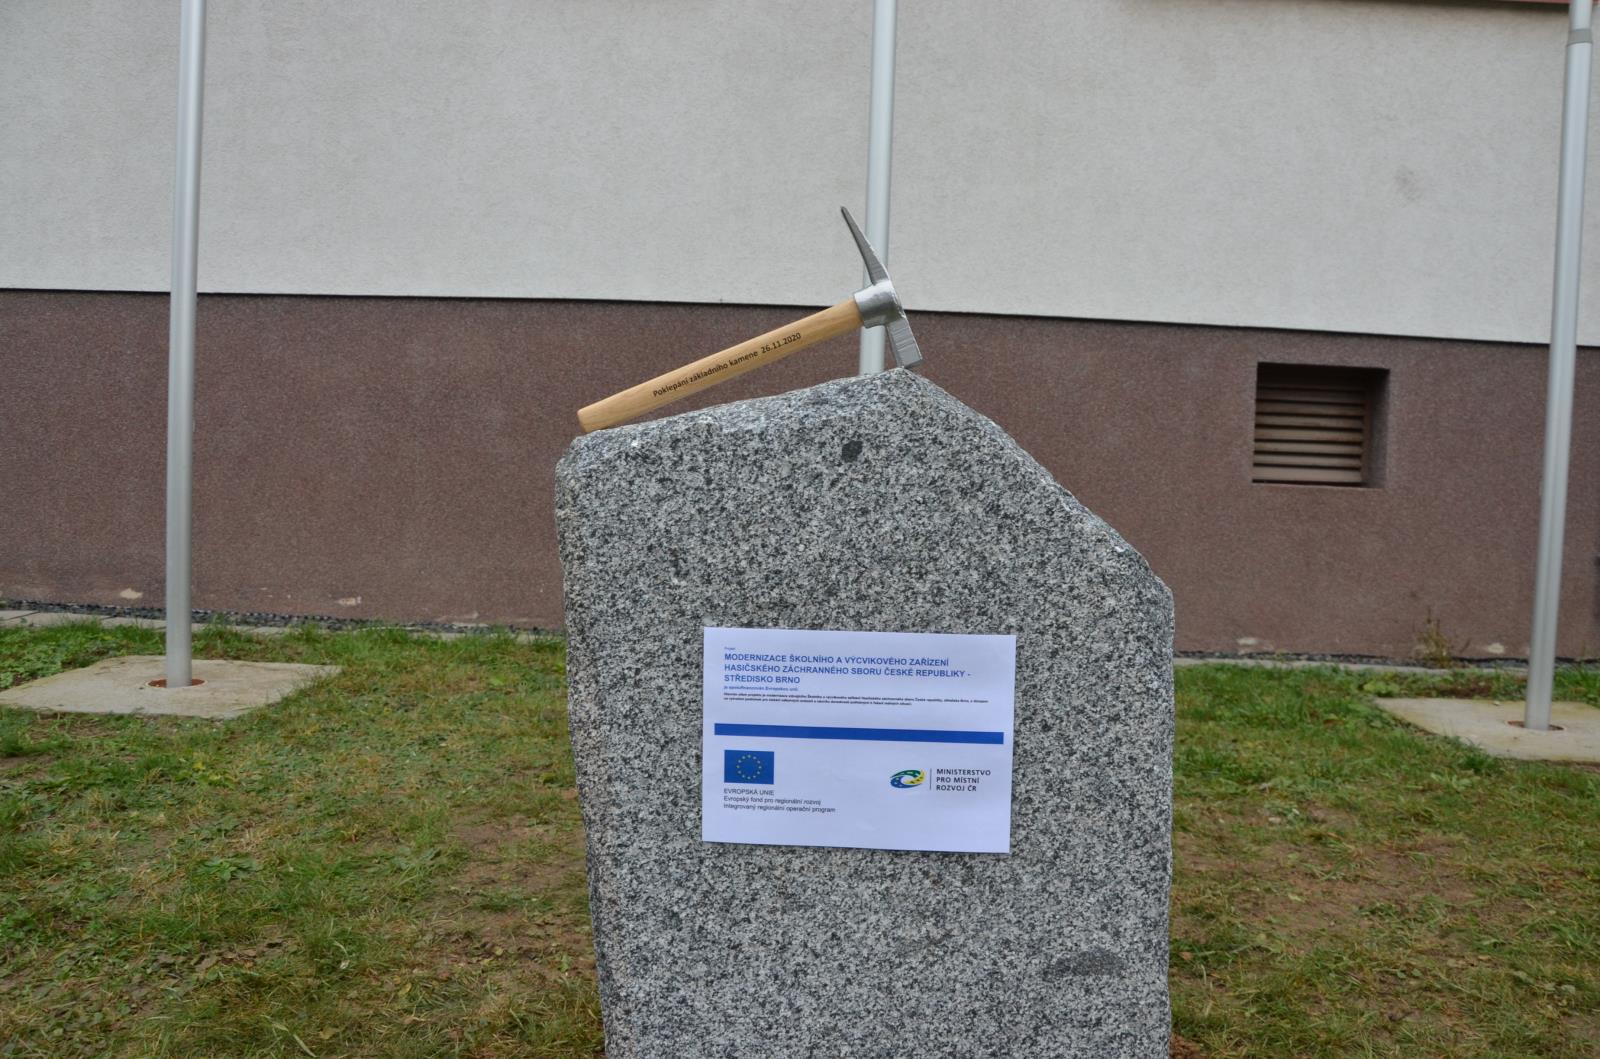 Pohled na základní kamen s kladívkem a cedulí upozorňující na projekt EU.JPG